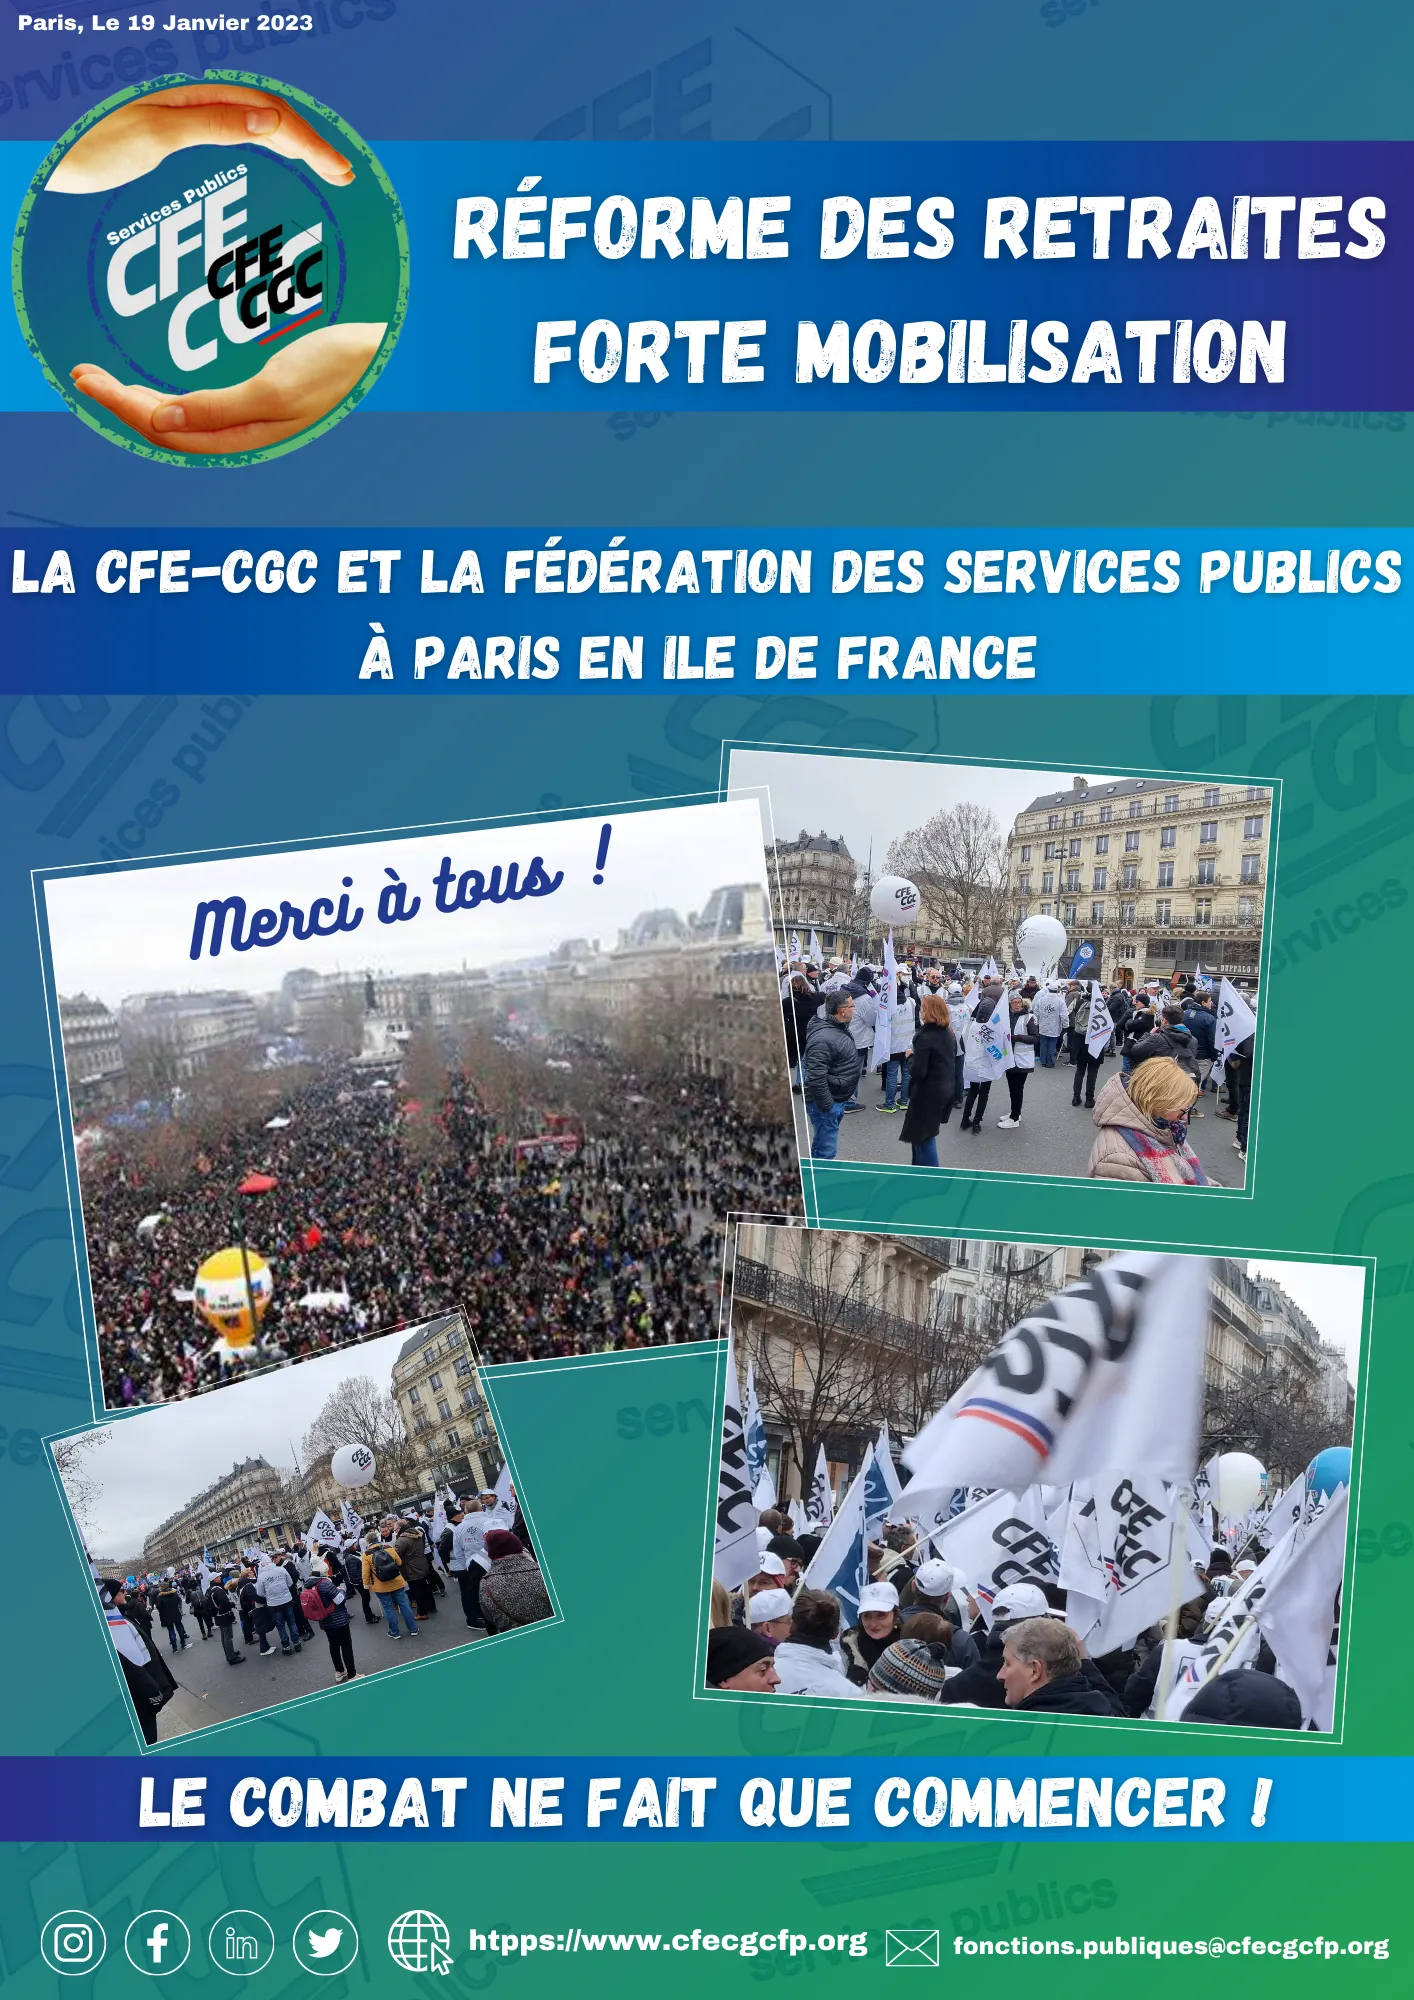 Réforme des retraites, Forte Mobilisation!